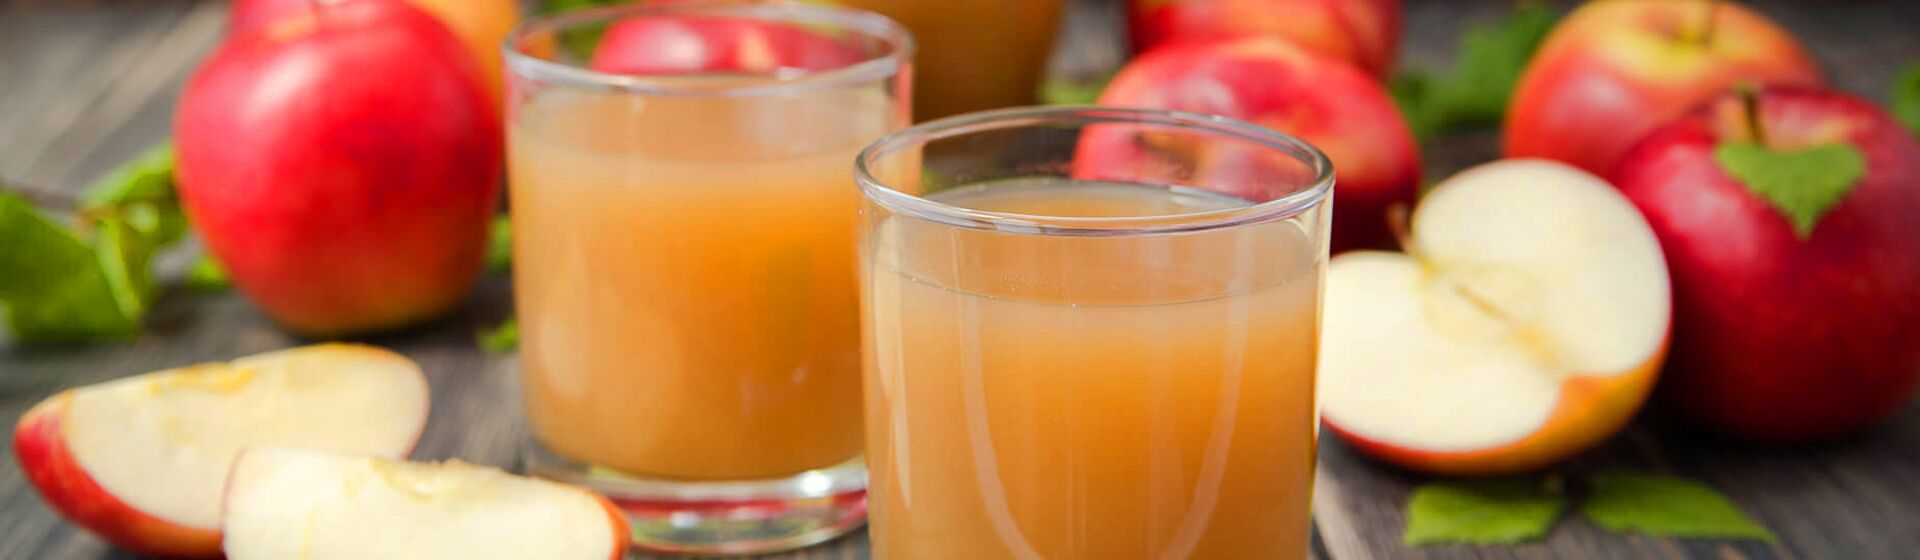 Как приготовить вкусный яблочный сок с мякотью?